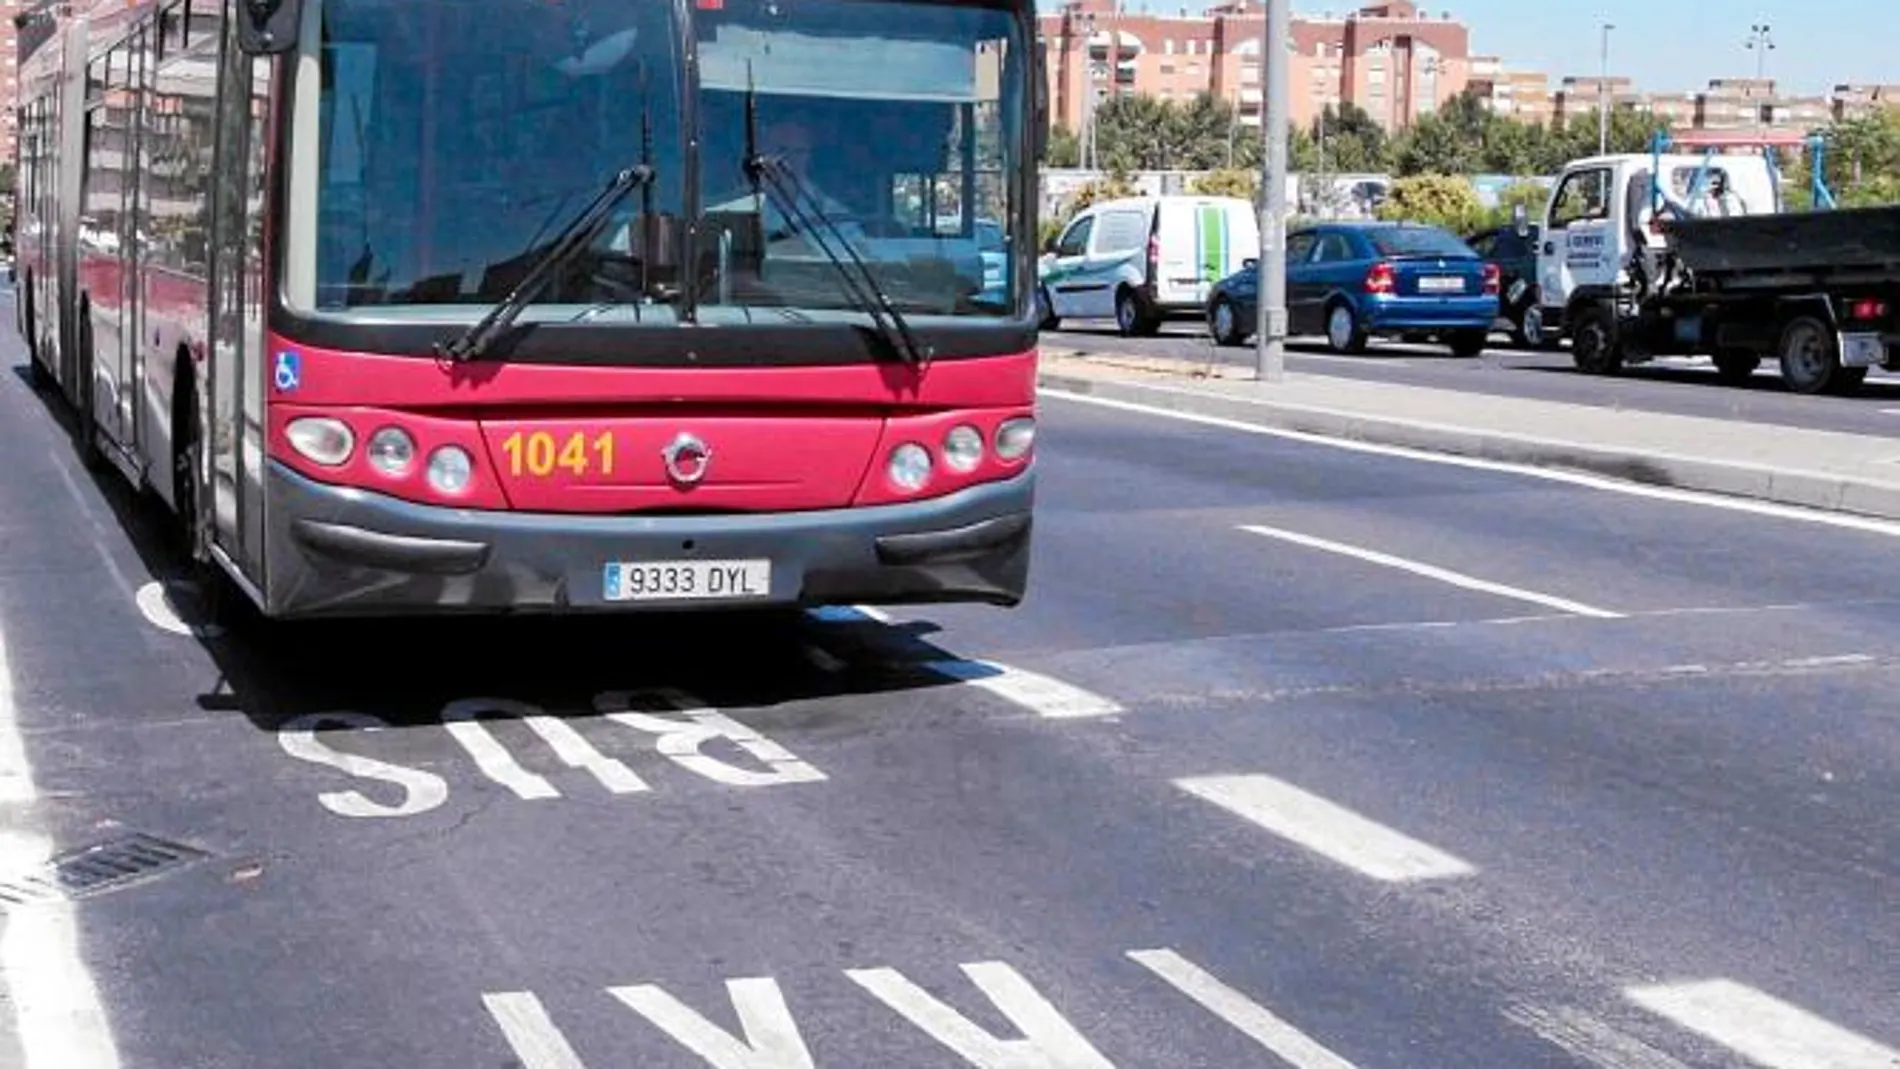 El carril bus ayudará a Tussam mejorar su velocidad comercial